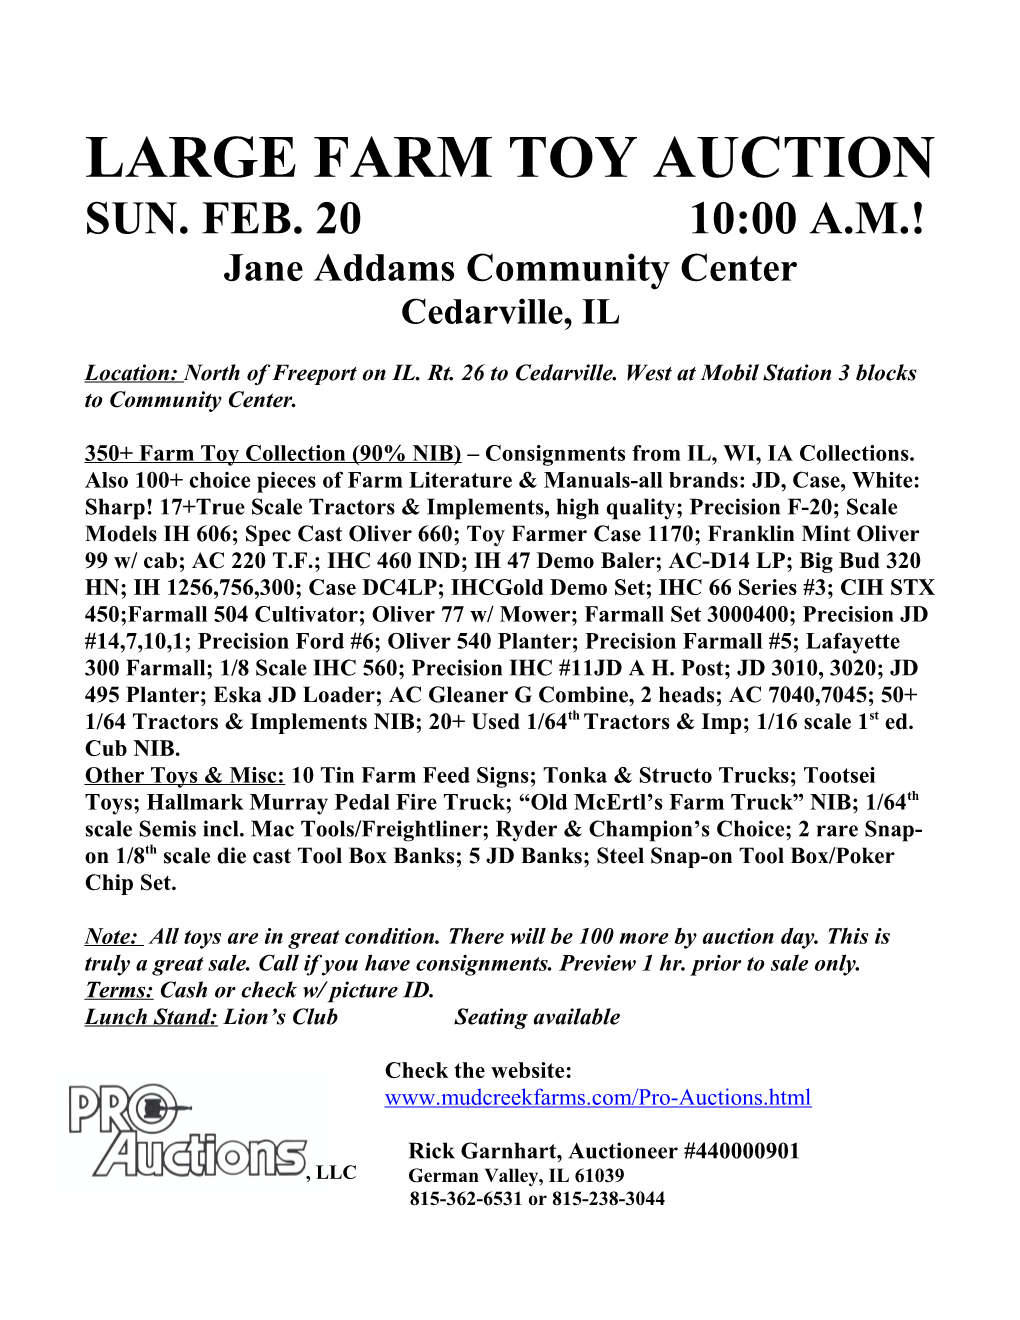 Large Farm Toy Auction